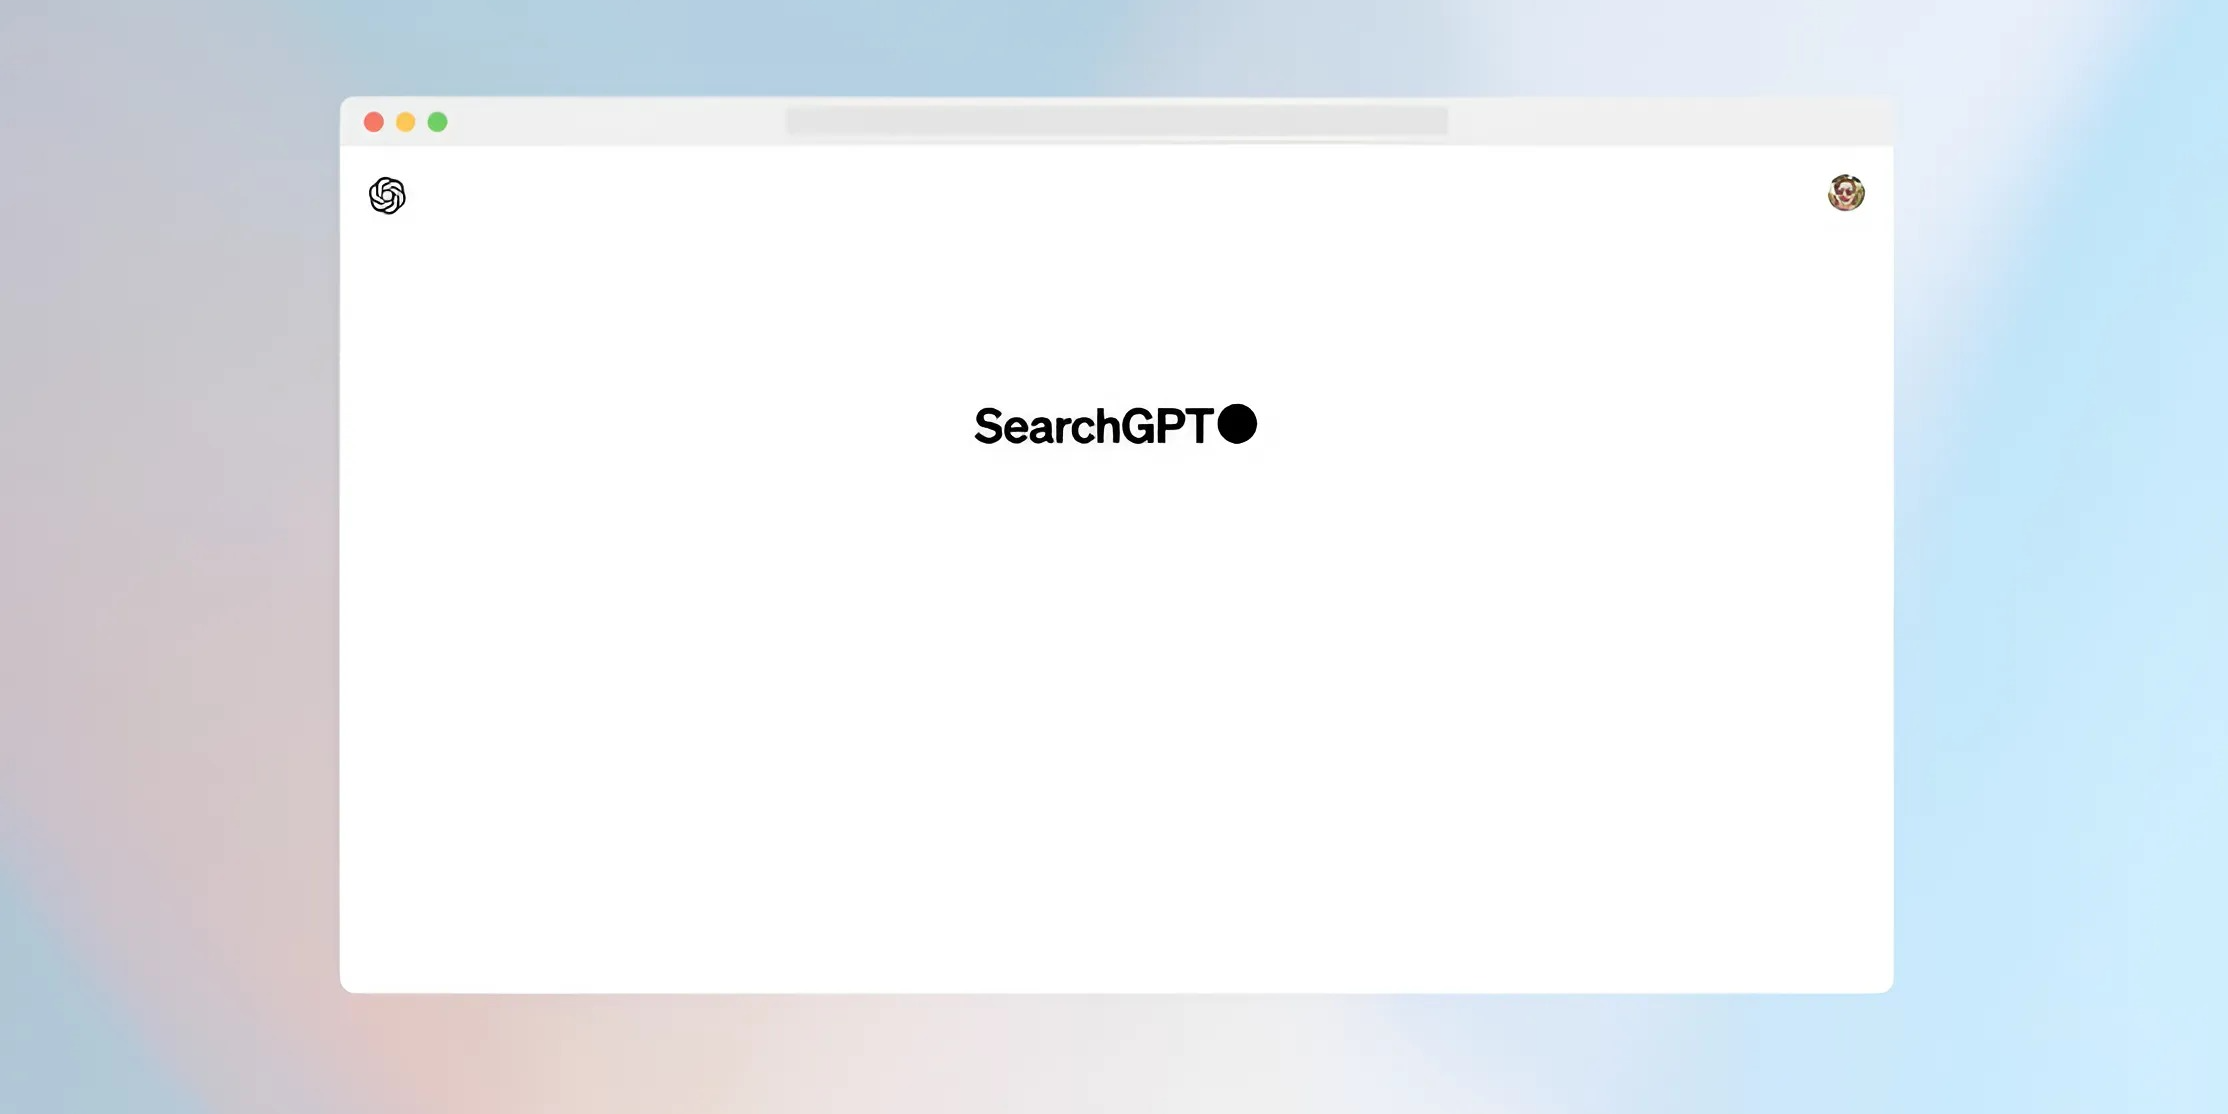 OpenAI представила SearchGPT — поисковую систему на базе ИИ